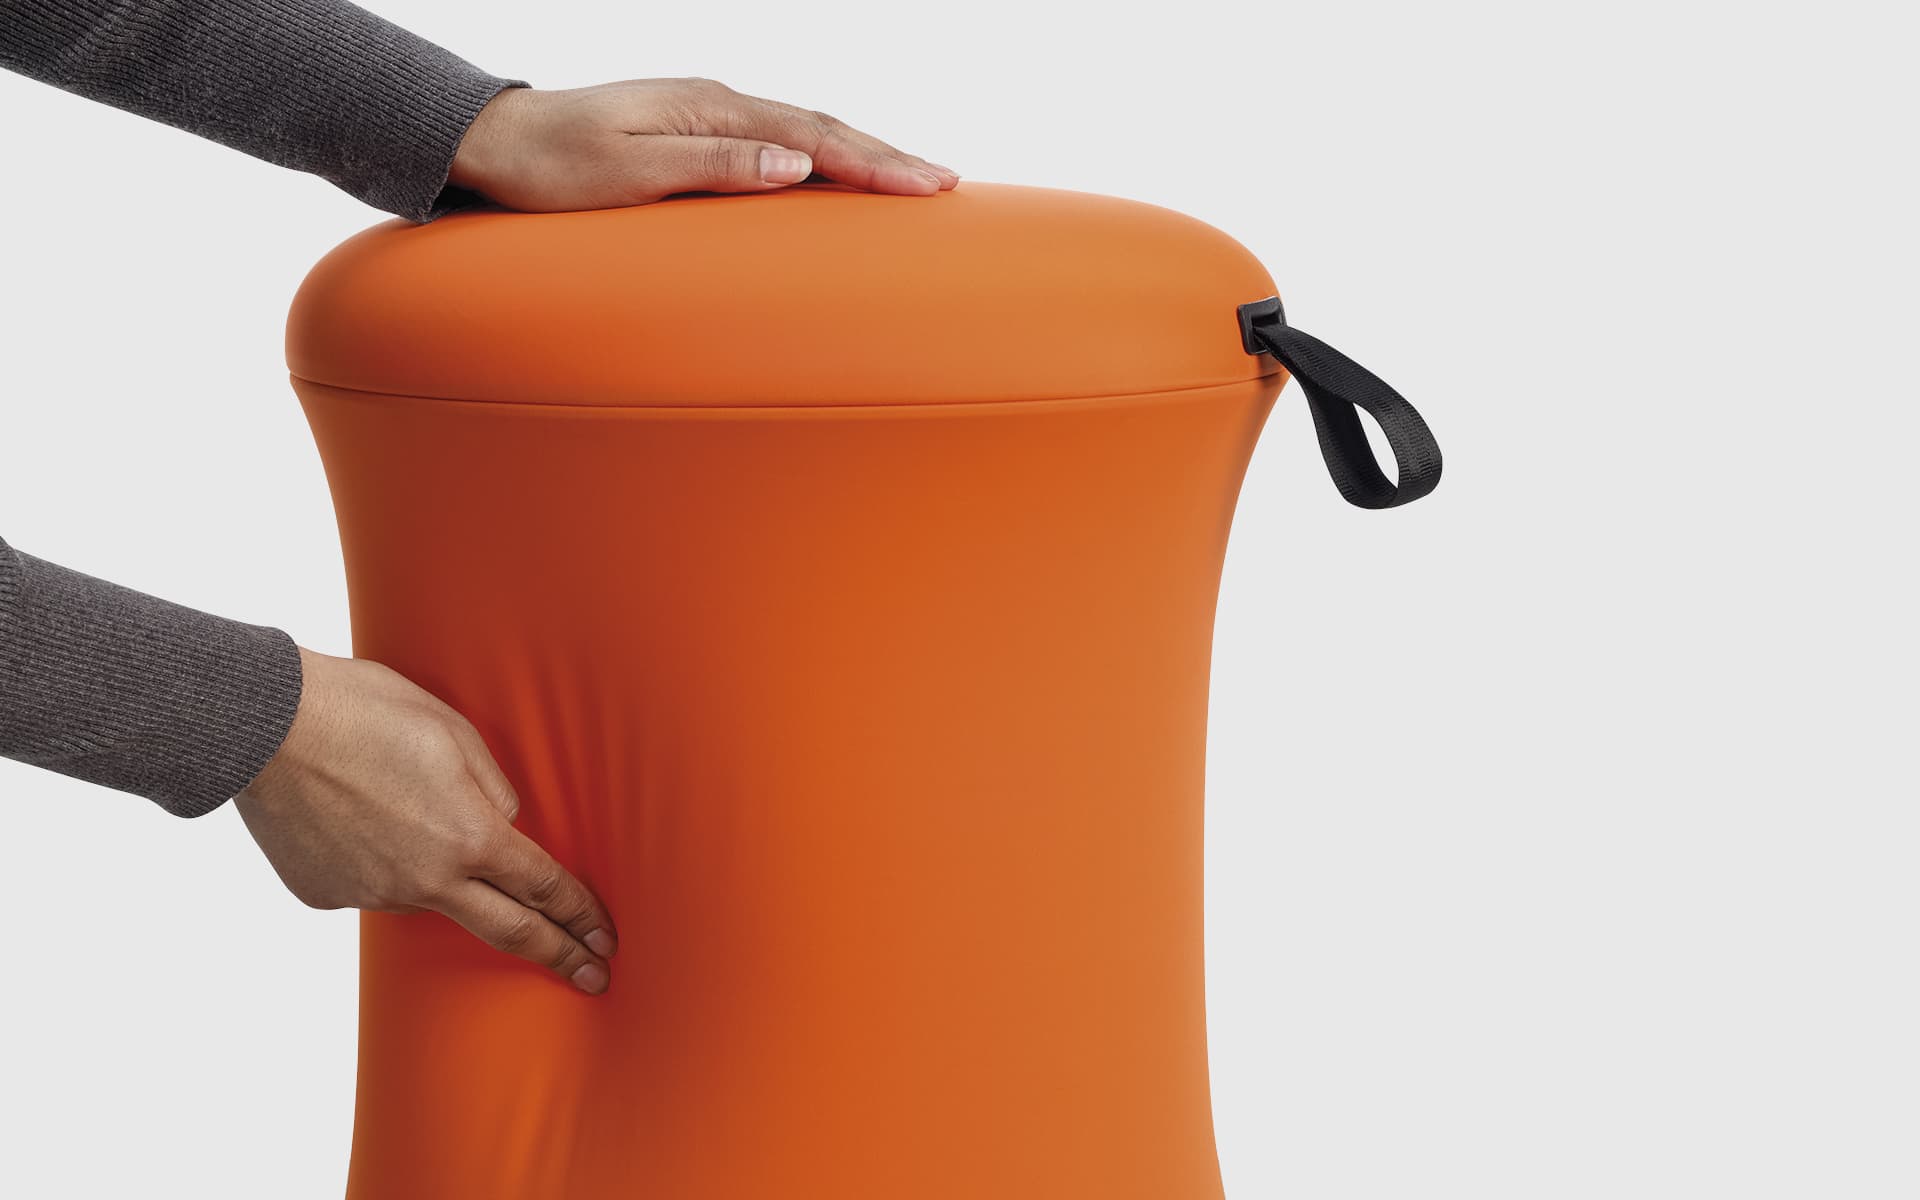 Nahaufnahme von Händen, die einen orangefarbenen UE Furniture Uebobo Hocker von ITO Design berühren